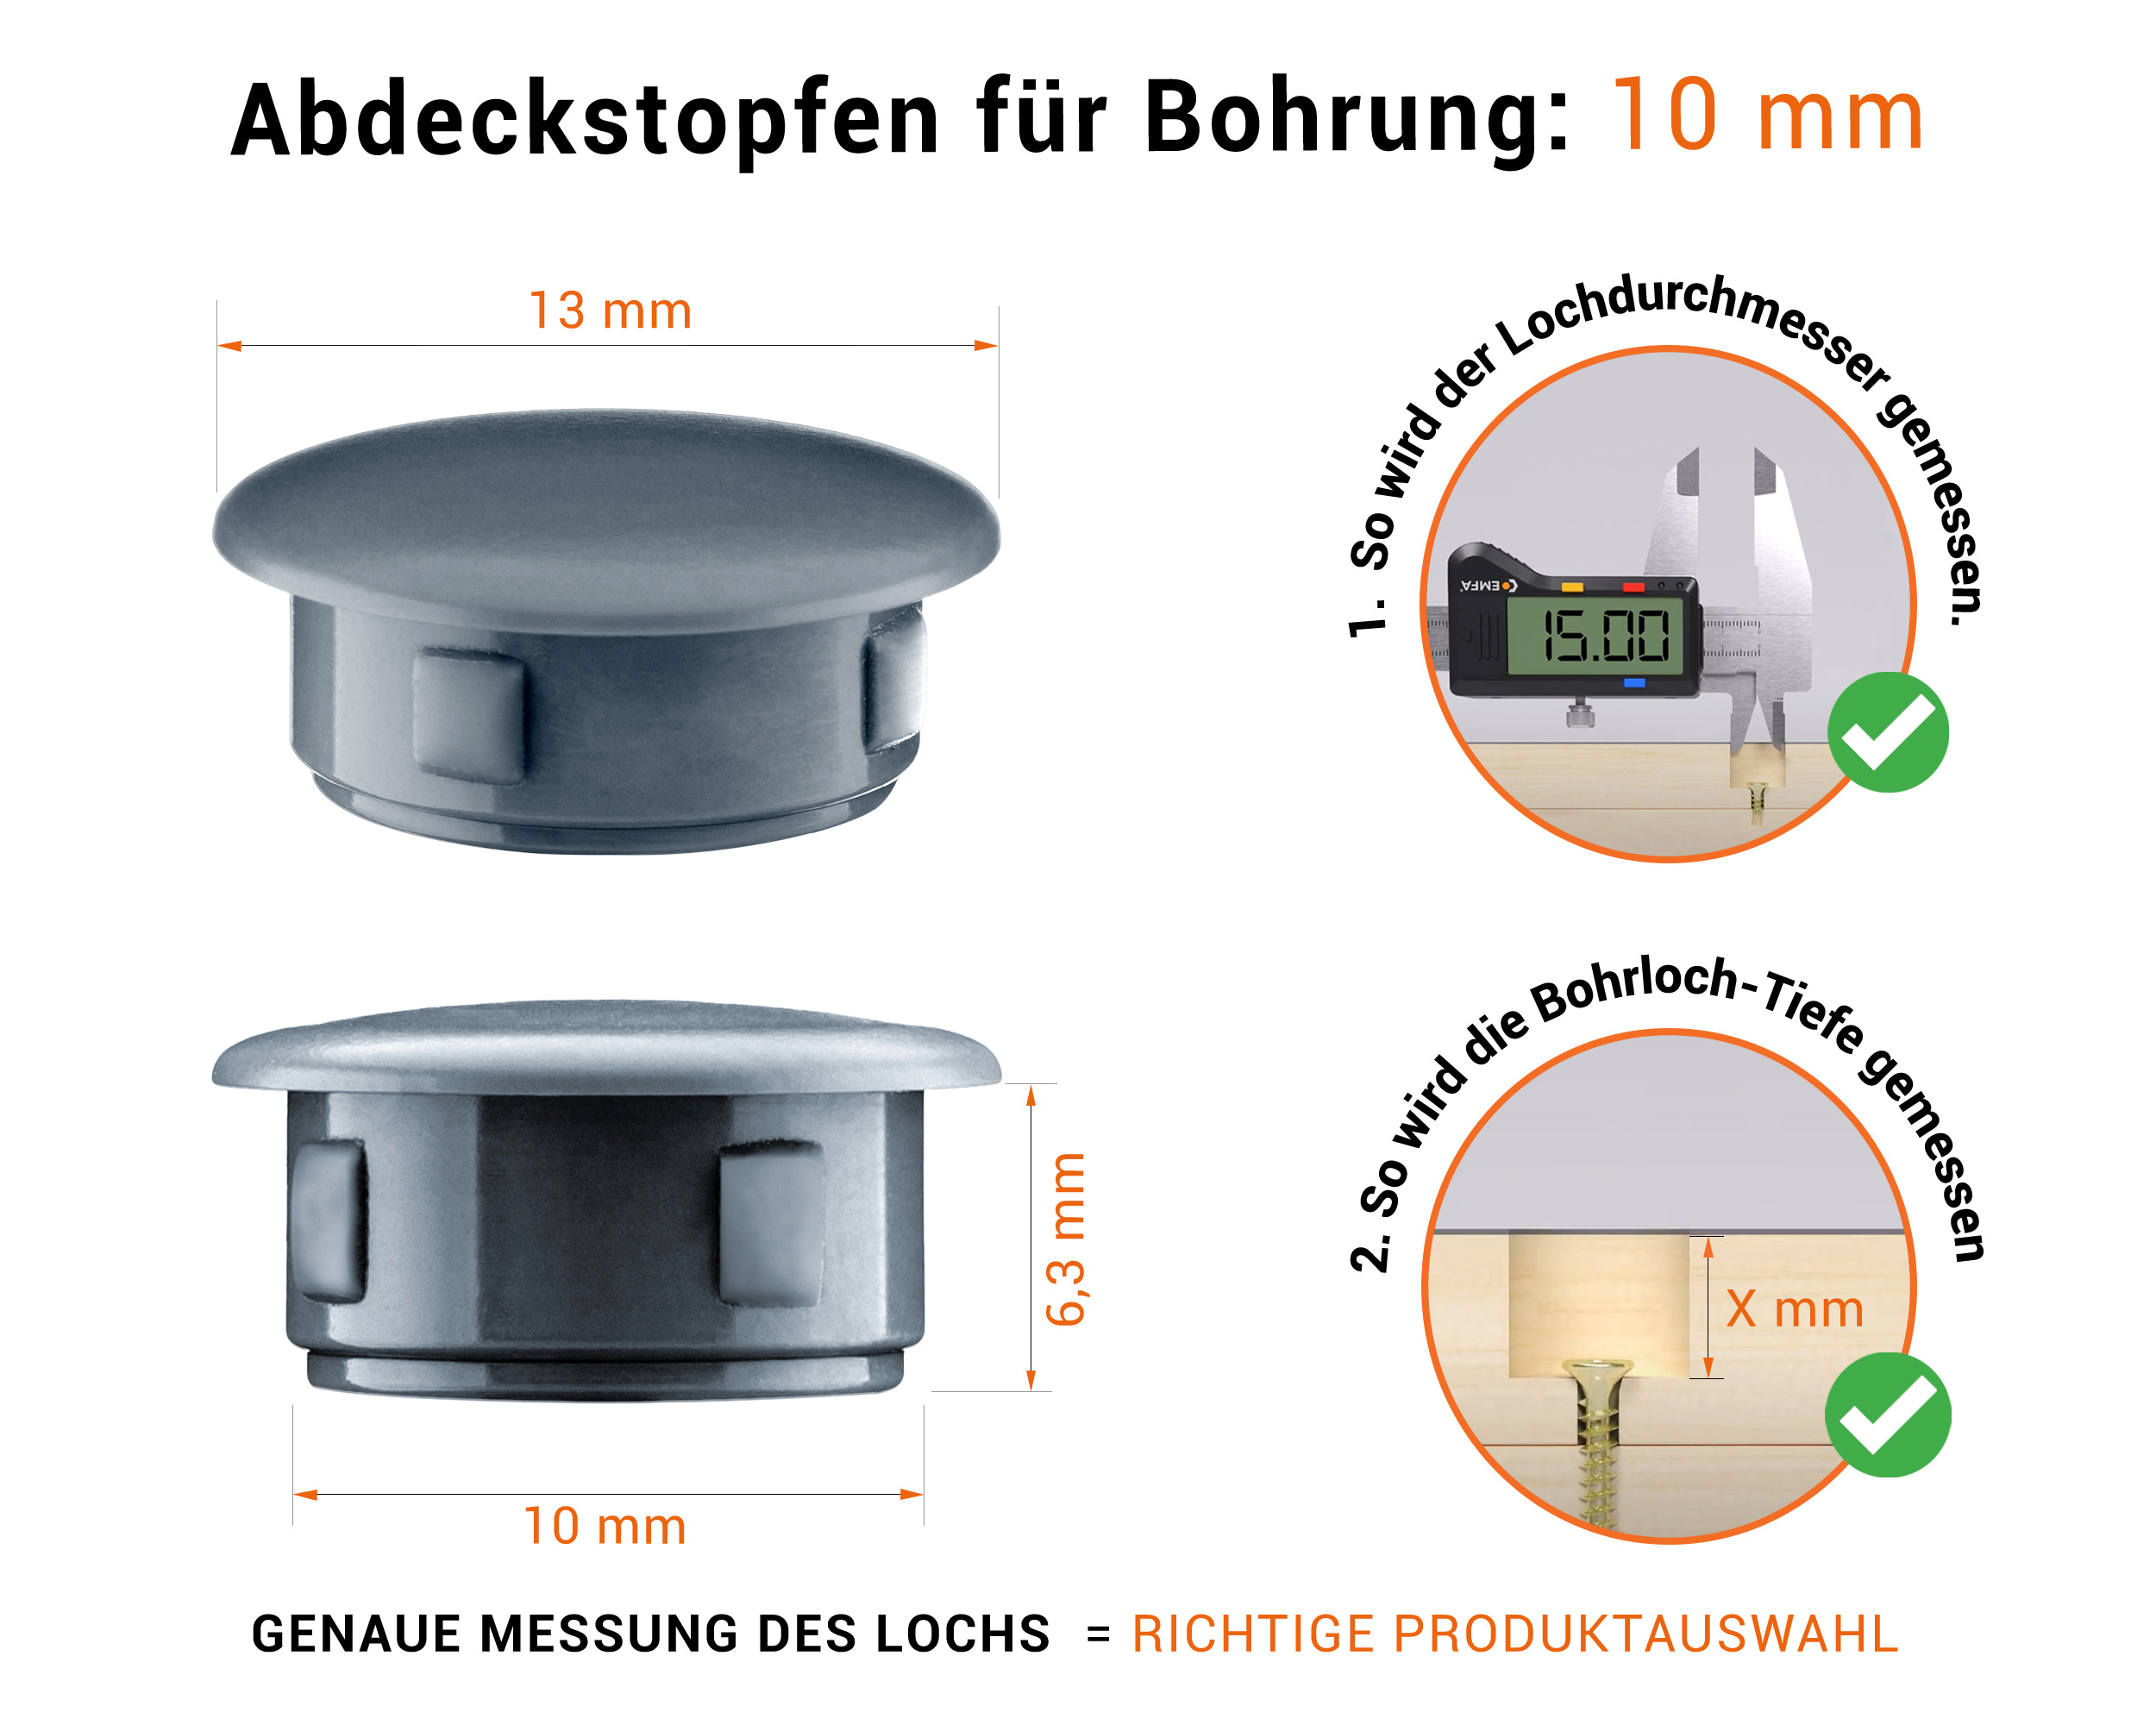 Anthrazite Blindstopfen aus Kunststoff für Bohrung 10 mmmm mit technischen Abmessungen und Anleitung für korrekte Messung